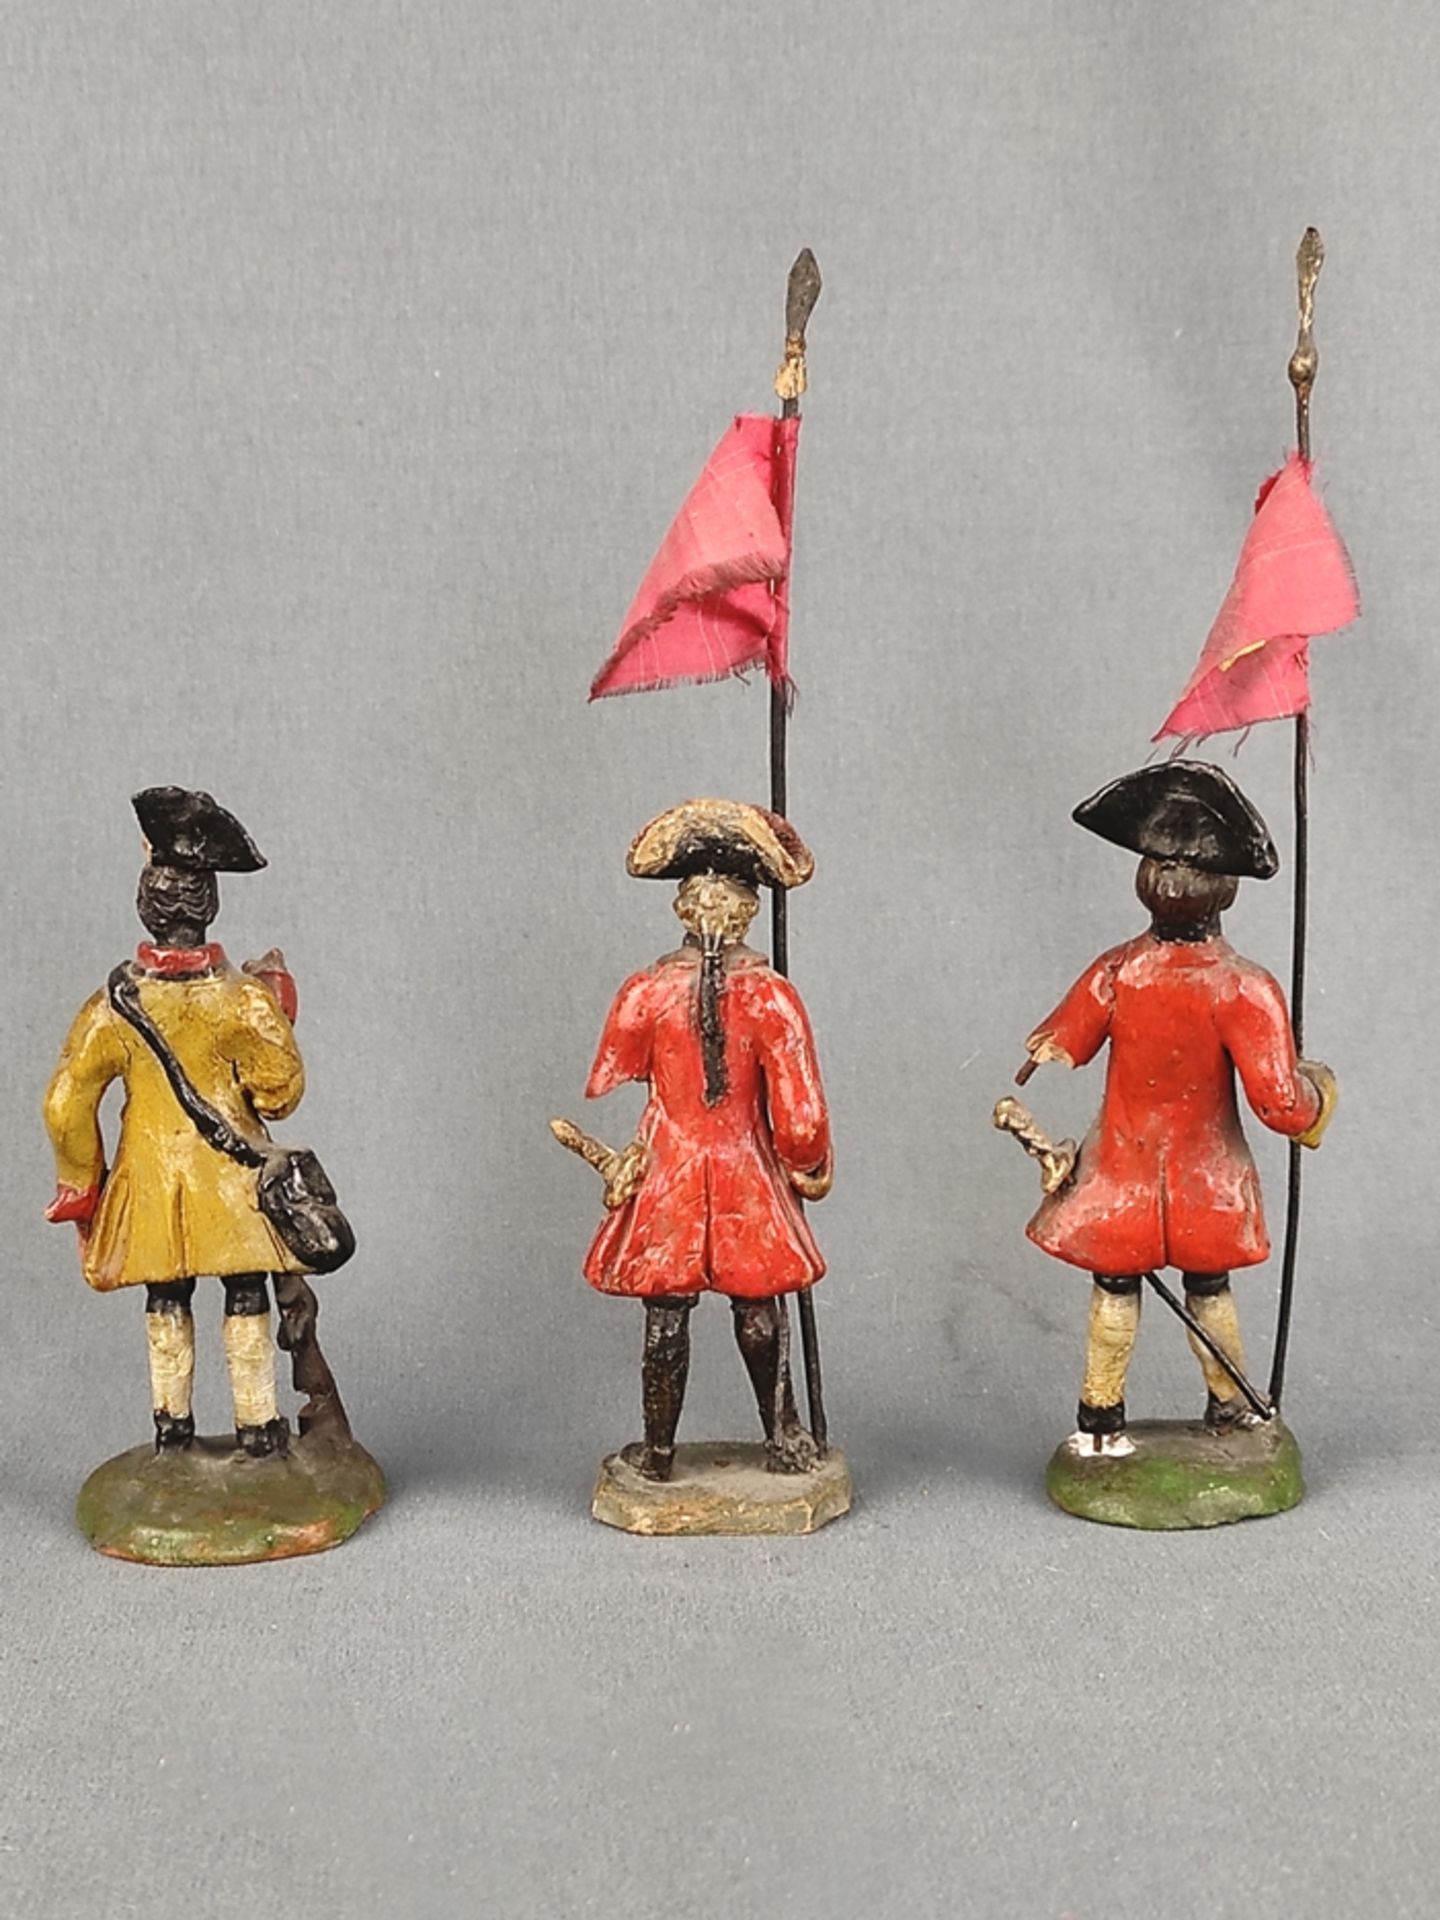 Drei Soldatenfiguren, 19. Jahrhundert, Terrakotta, farbig bemalt, Höhe (mit Flaggen) 17cm, teilweis - Bild 2 aus 2